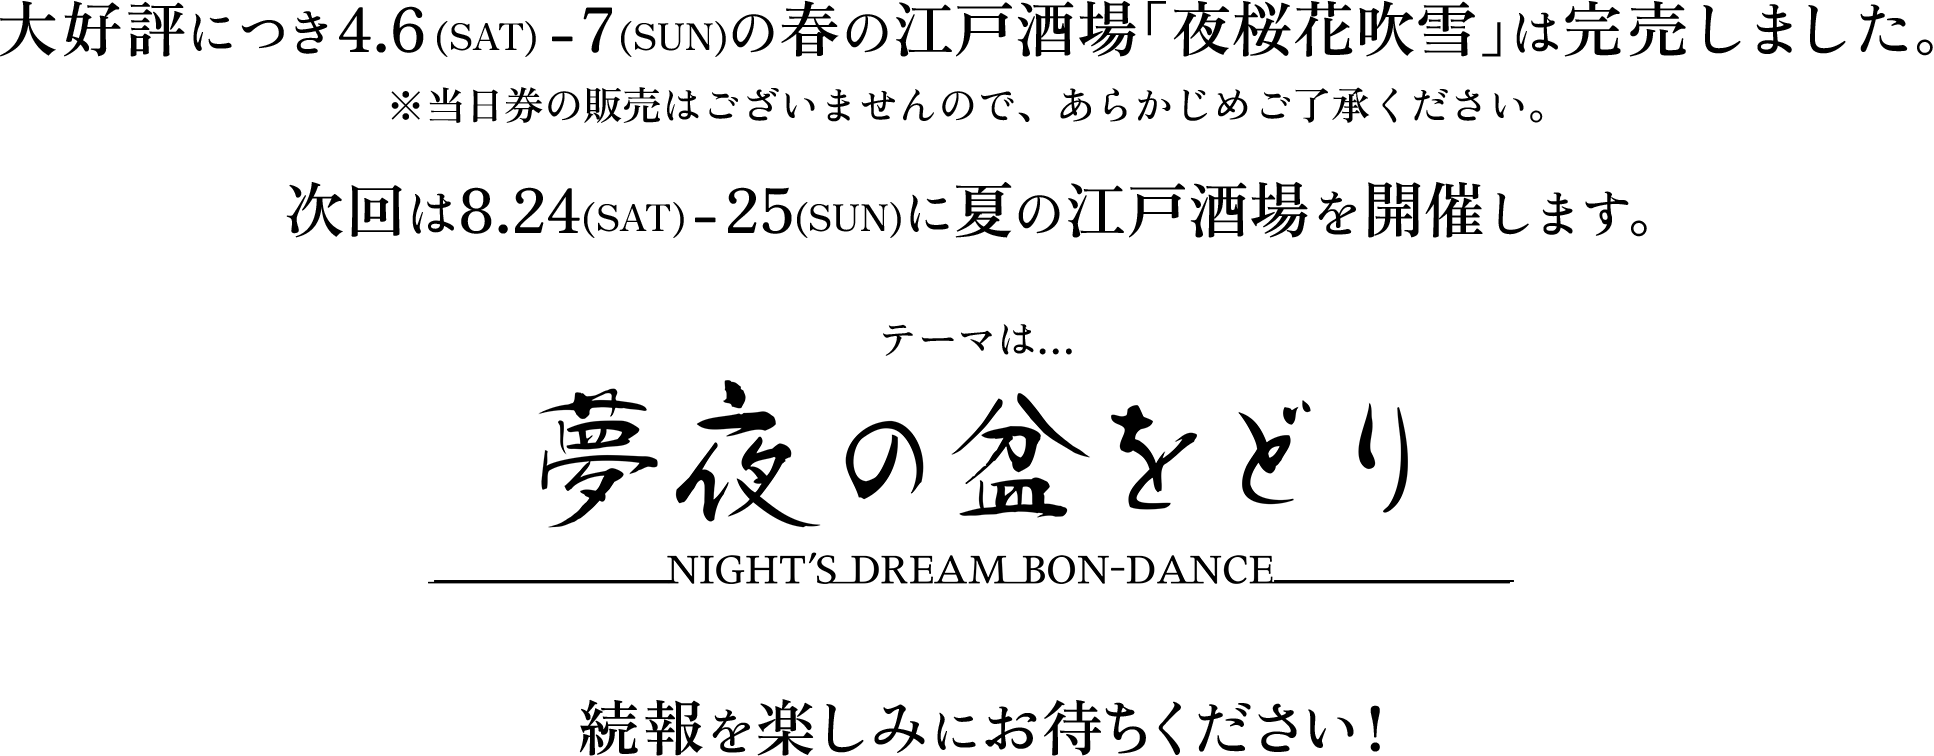 大好評につき4.6(SAT) - 7(SUN)の春の江戸酒場「夜桜花吹雪」は完売しました。※当日券の販売はございませんので、あらかじめご了承ください。 次回は8.24(SAT) - 25(SUN)に夏の江戸酒場を開催します。テーマは…夢夜の盆をどり ---NIGHT'S DREAM BON-DANCE---　続報を楽しみにお待ちください!